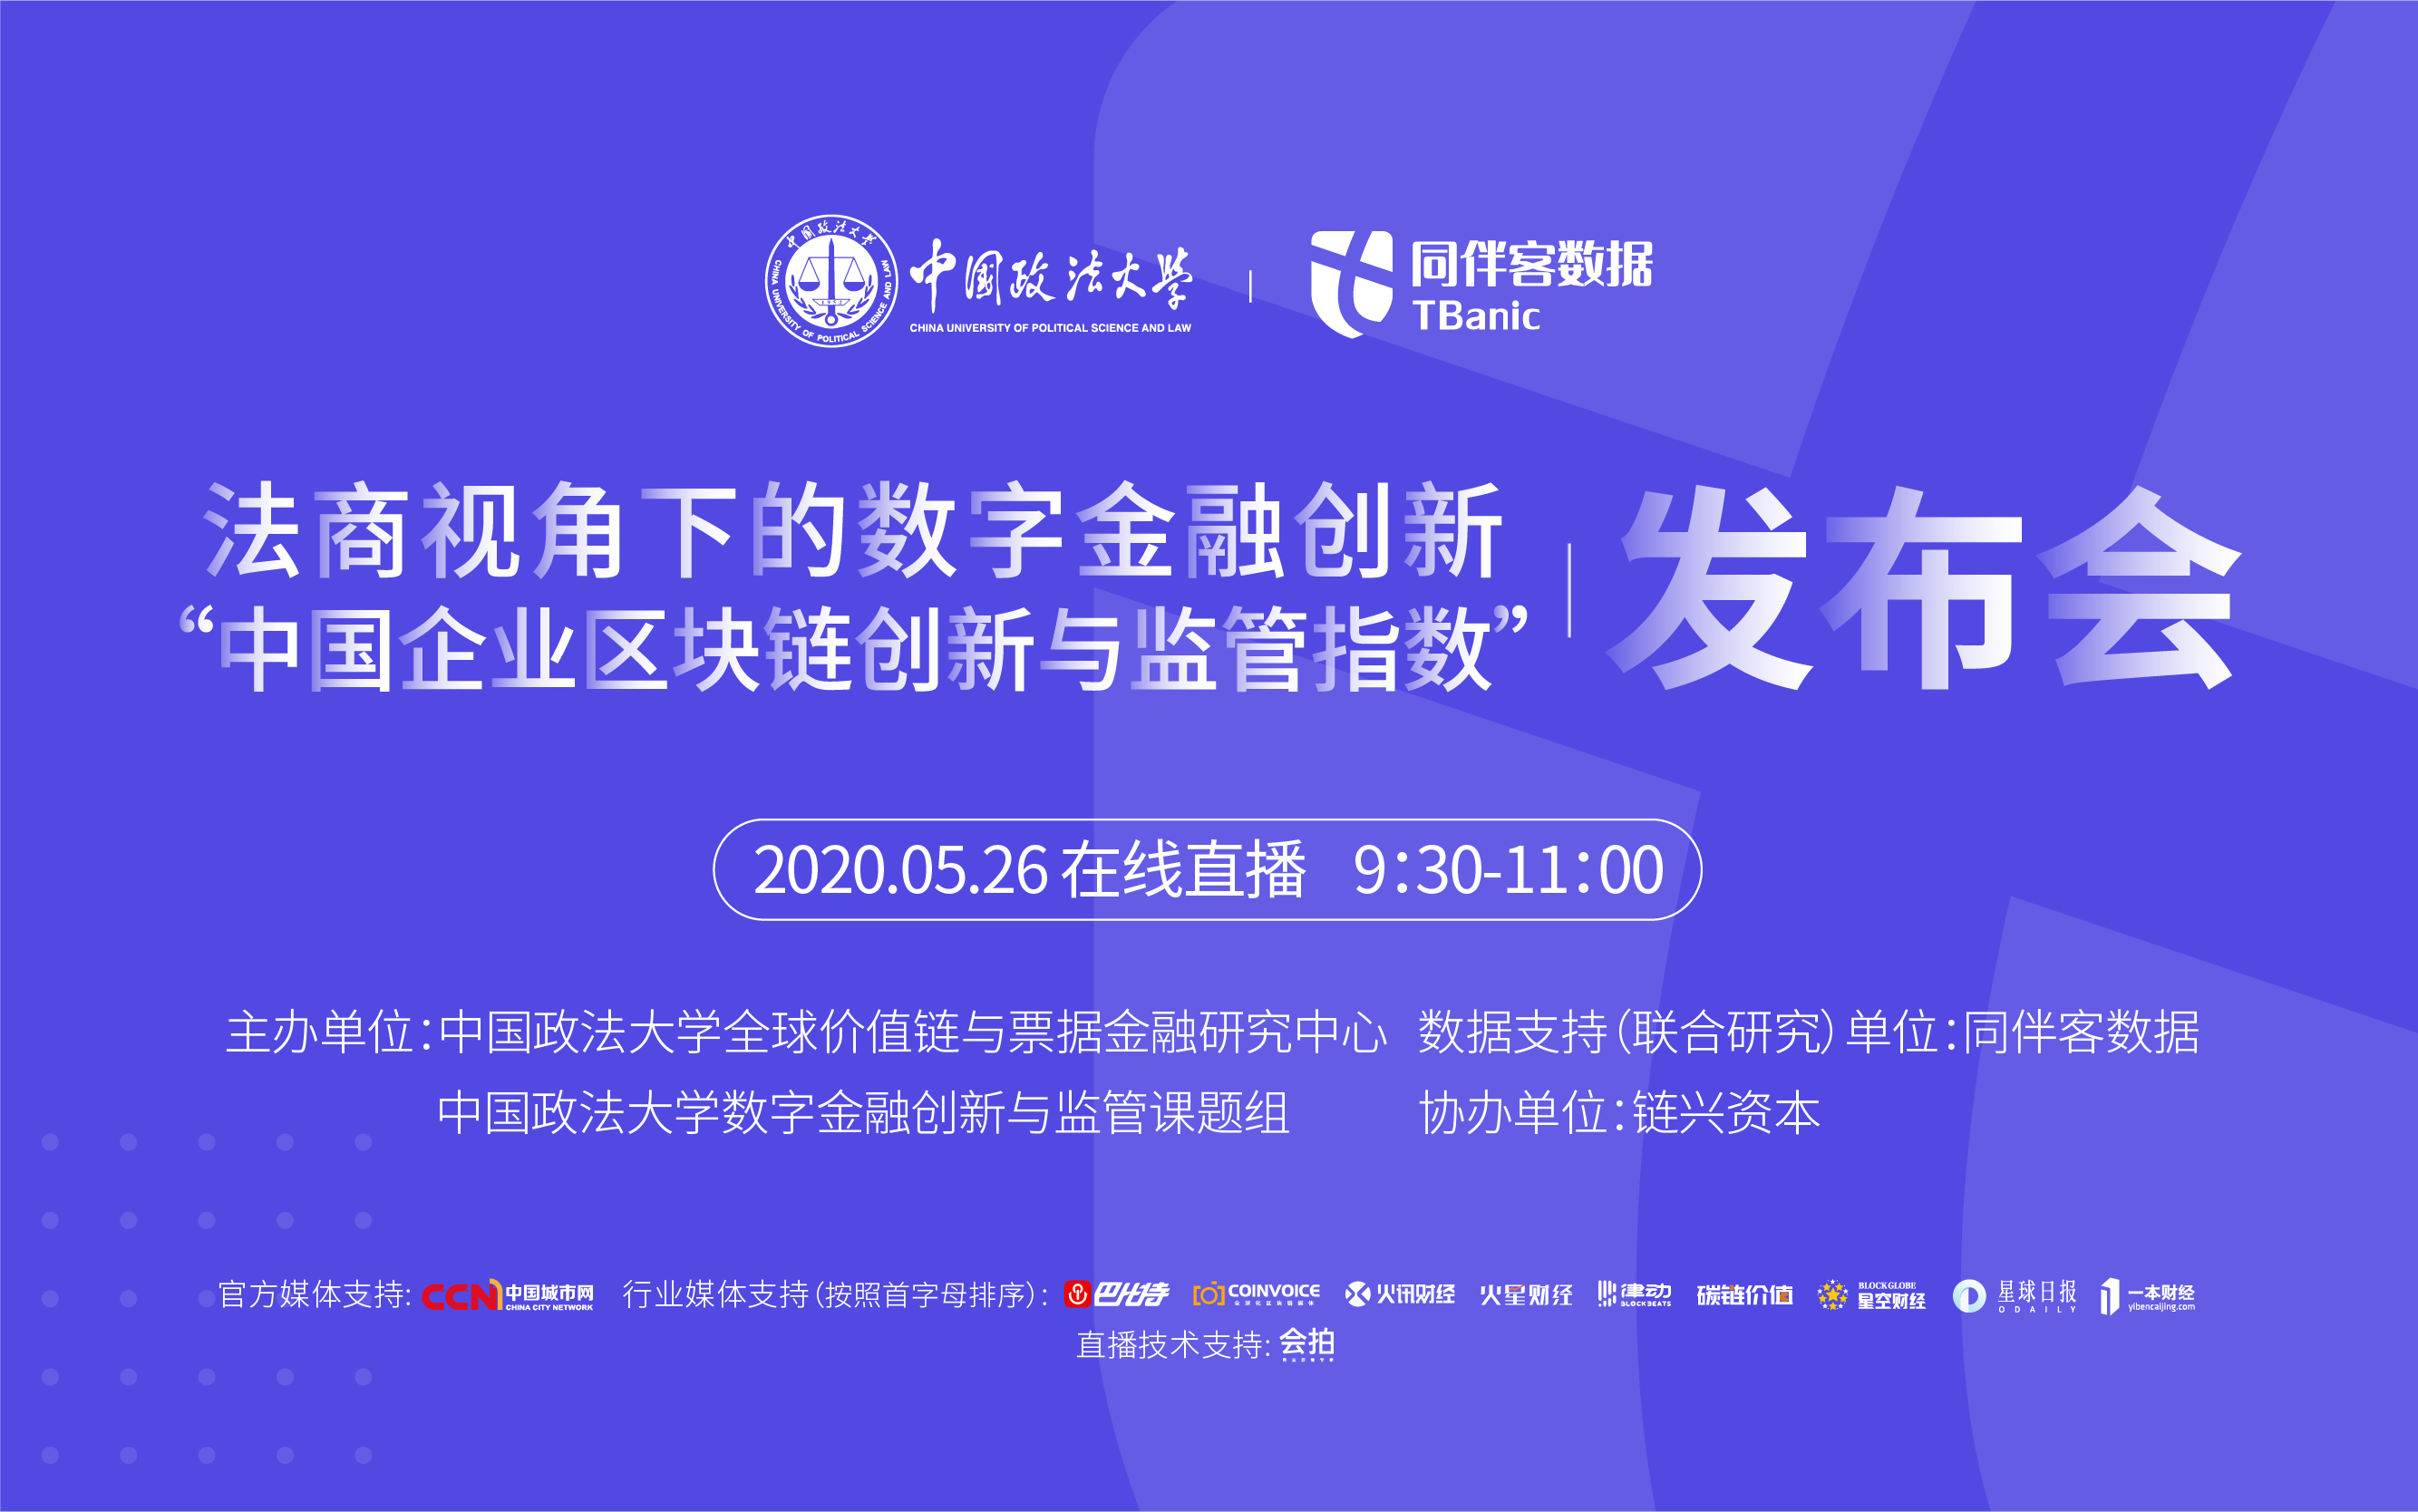 “中国企业区块链创新与监管指数”发布会